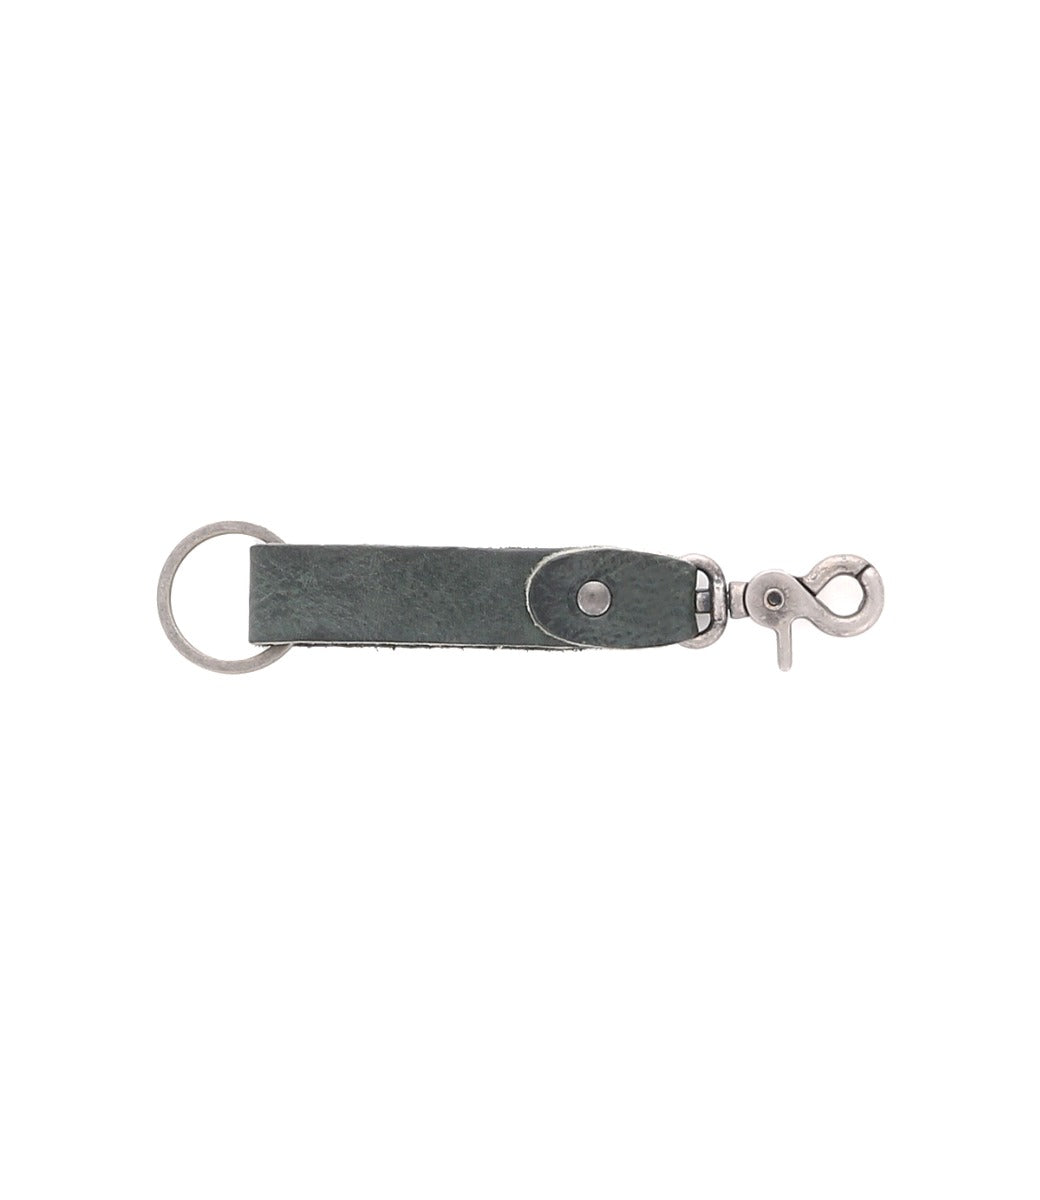 A Bed Stu Keygrab, a grey leather key ring with a metal clasp.